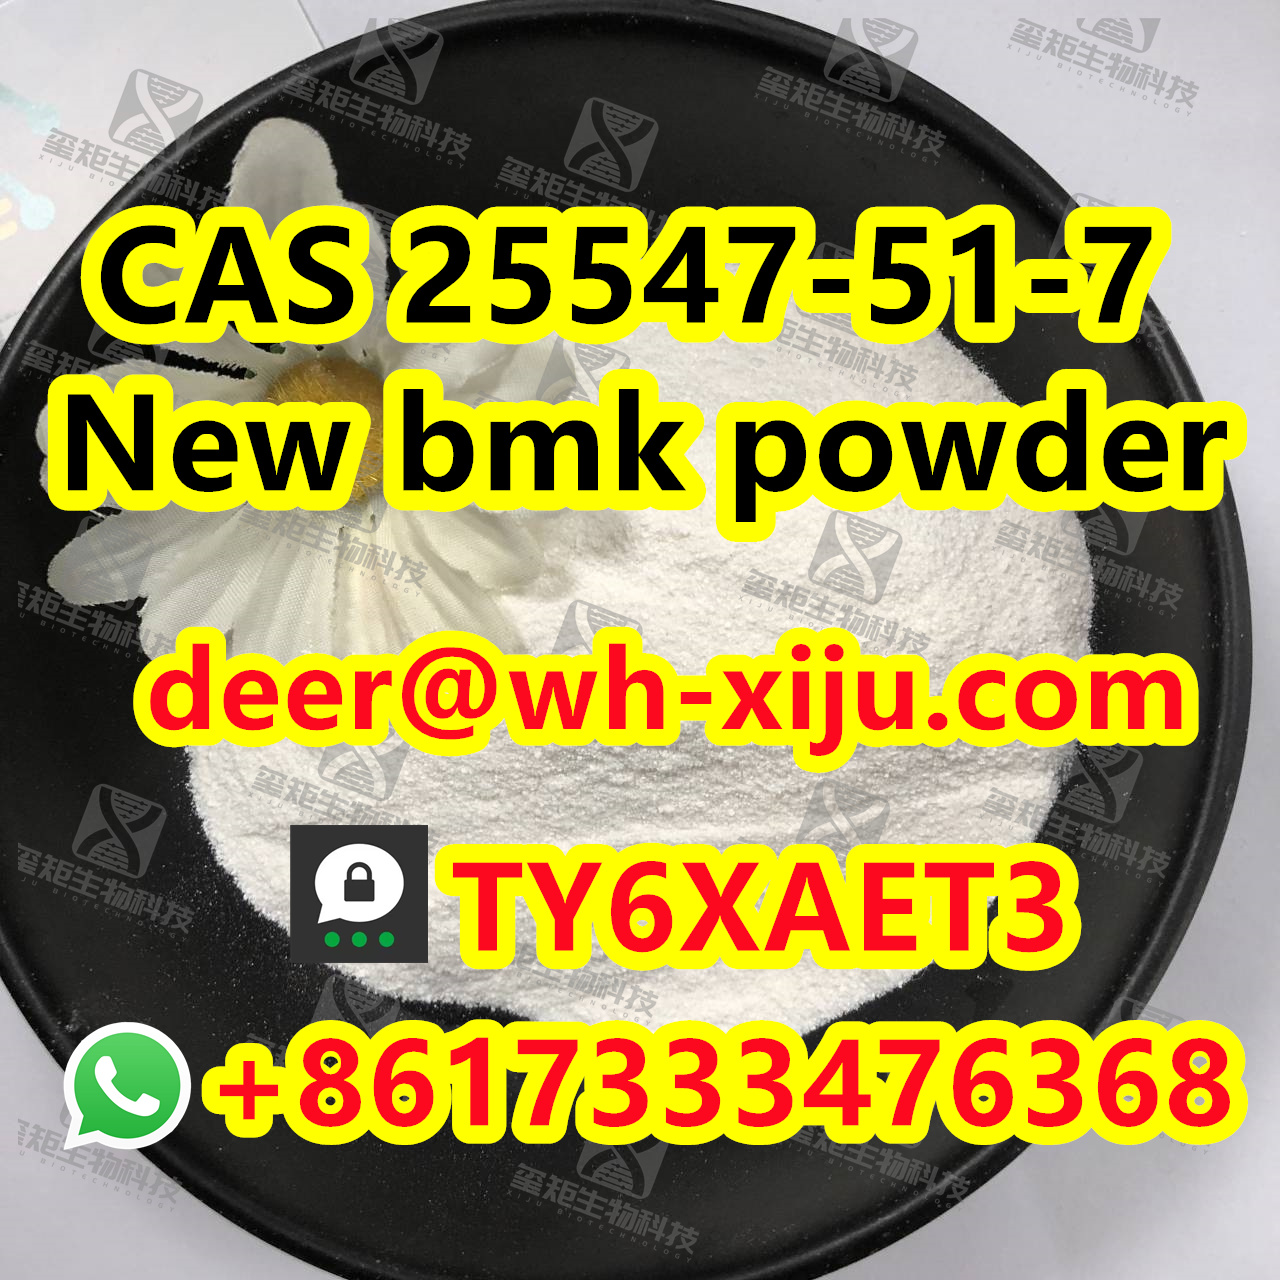 New bmk powder CAS 25547-51-7/5449-12-7, Threema: TY6XAET3 Whatsapp/Tel: +86 17333476368